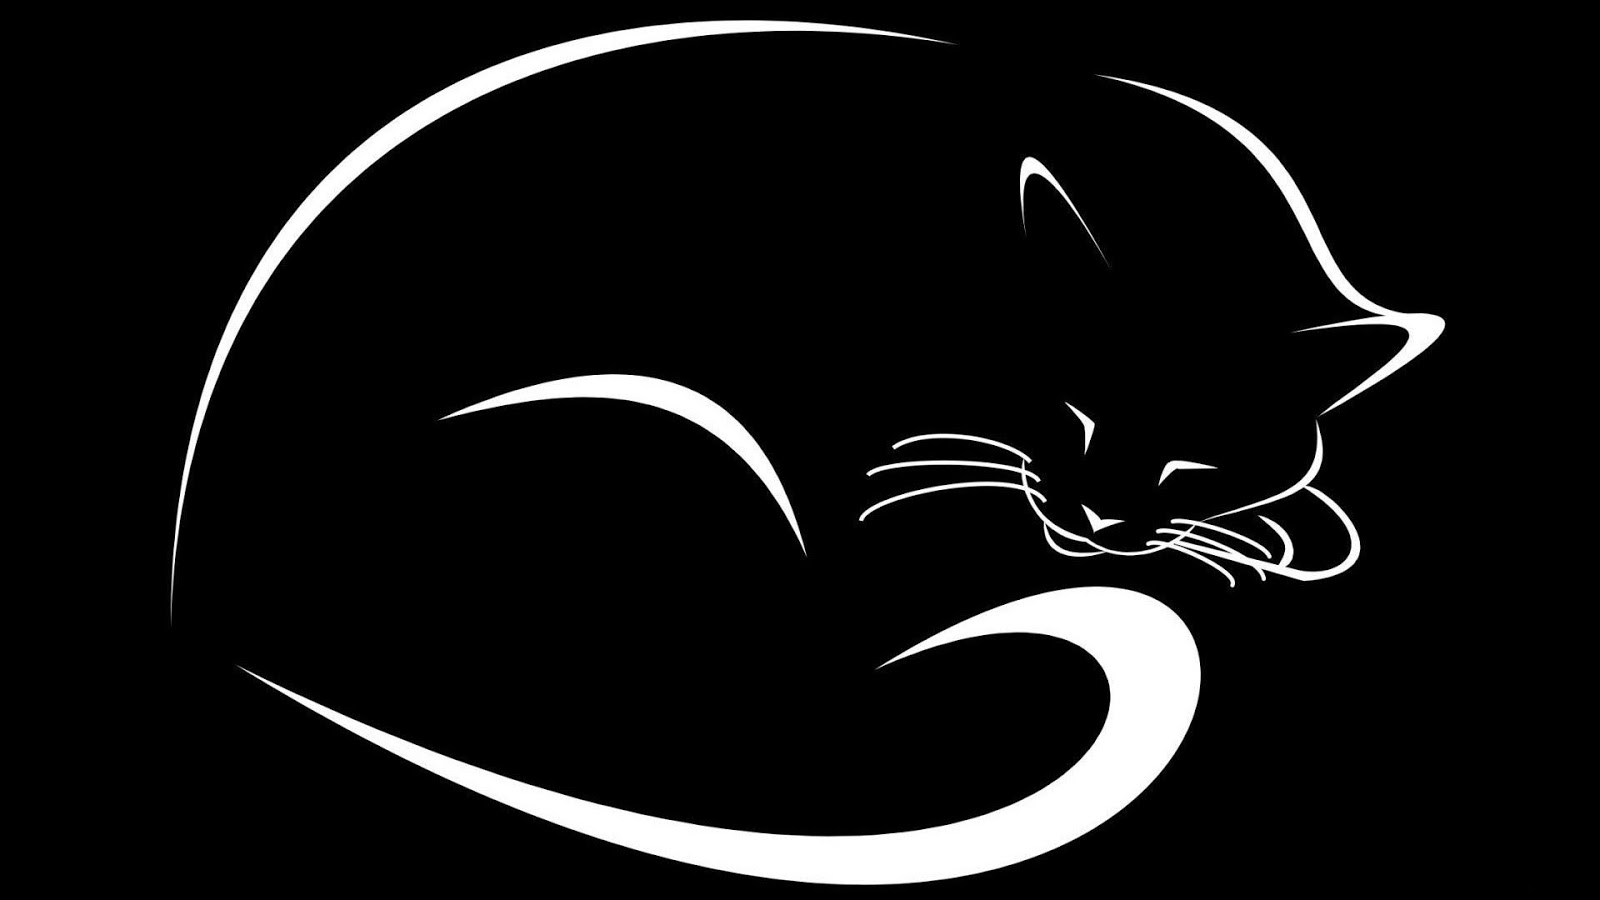 fond d'écran siyah beyaz,chat,chat noir,chats de petite à moyenne taille,moustaches,félidés